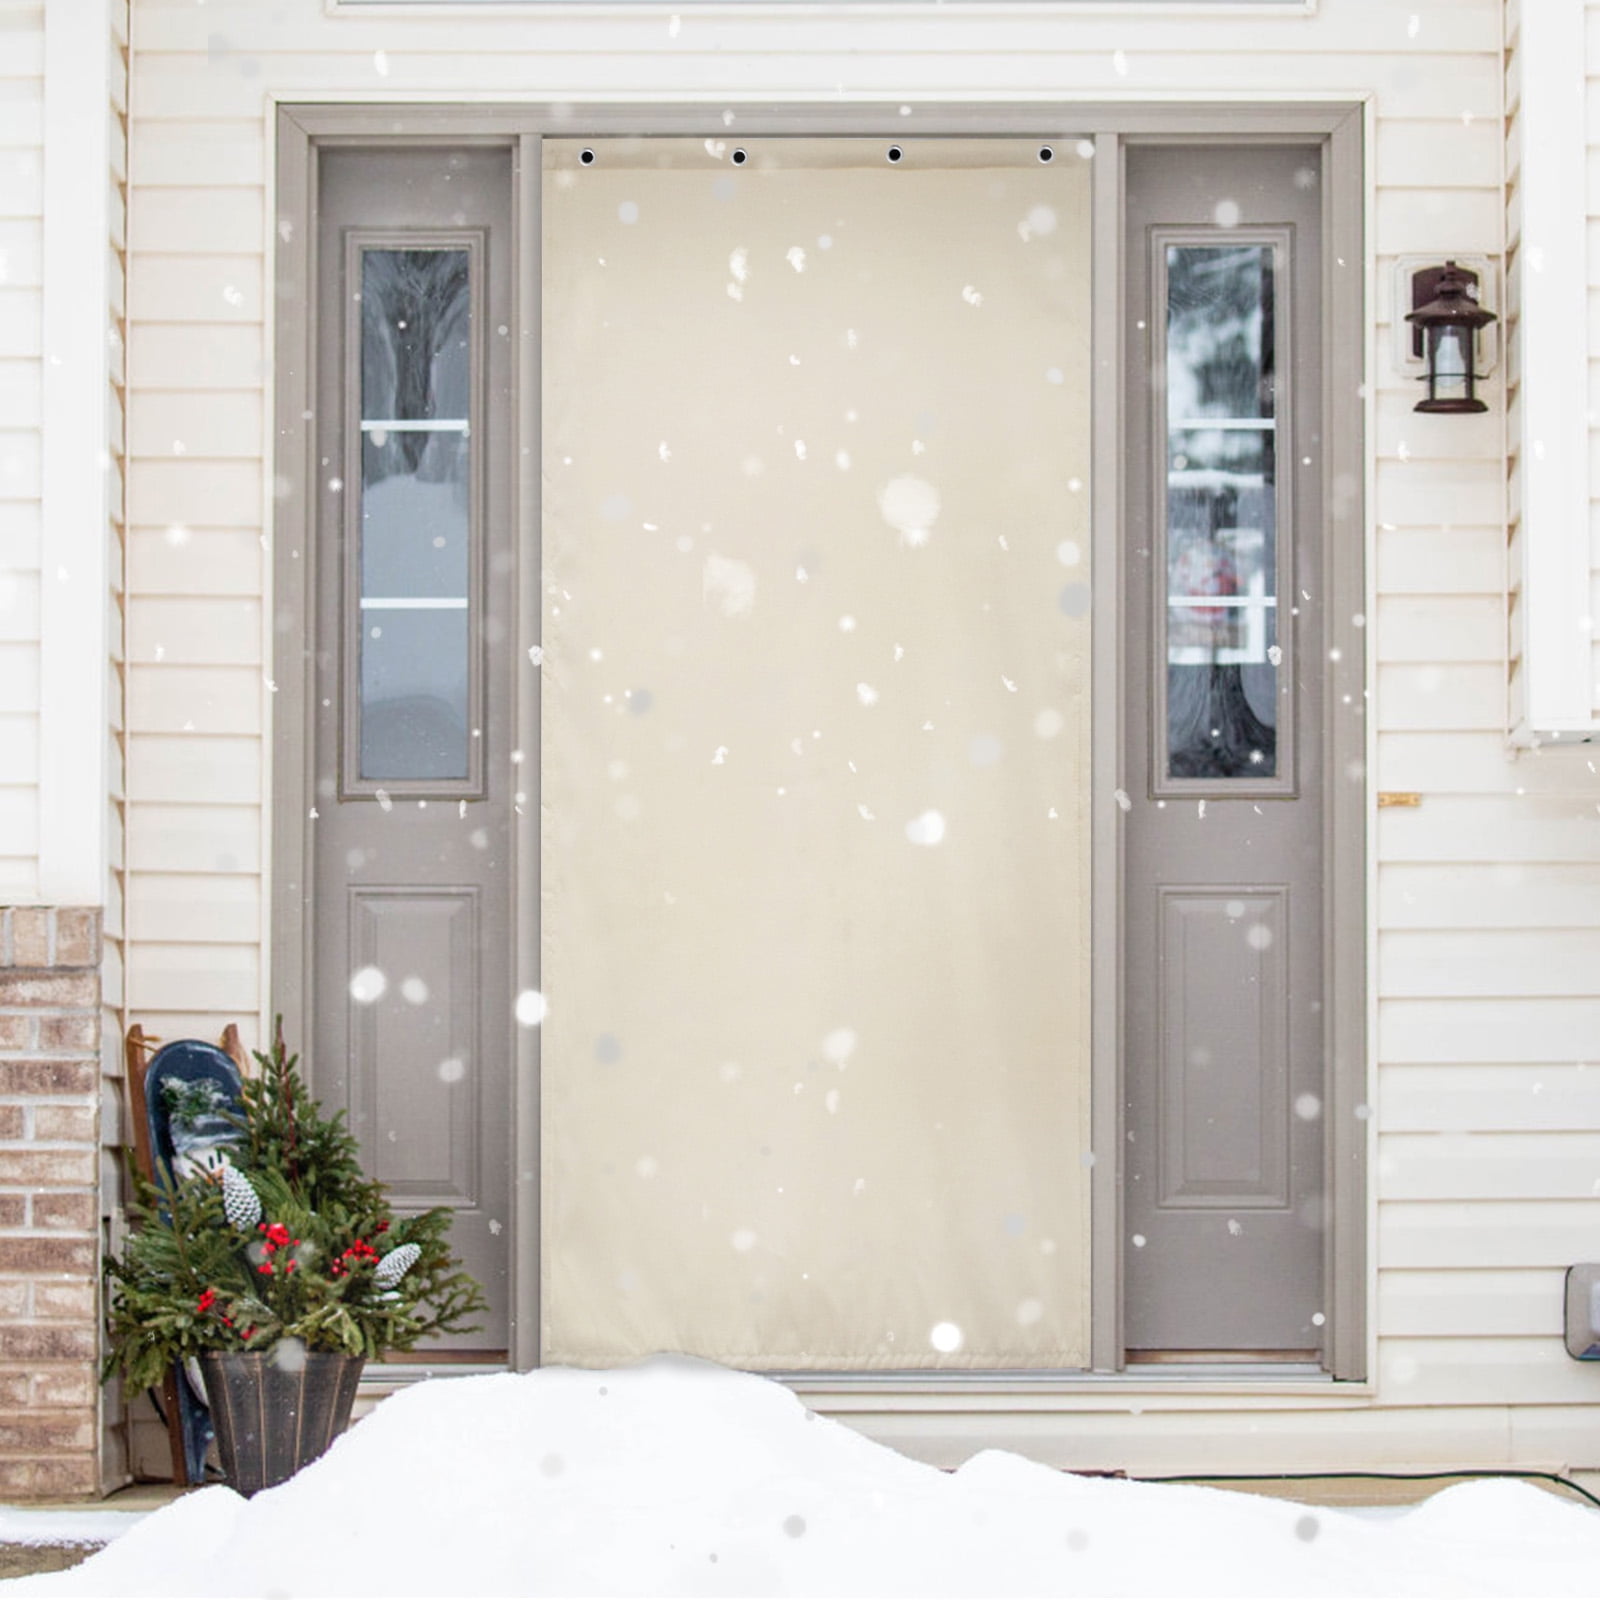 Magnetic Thermal Insulated Door Curtain, Insulated Barrier Soundproof  Blanket for Door, Temporary Door Window Insulation for Winter,  Weatherproof